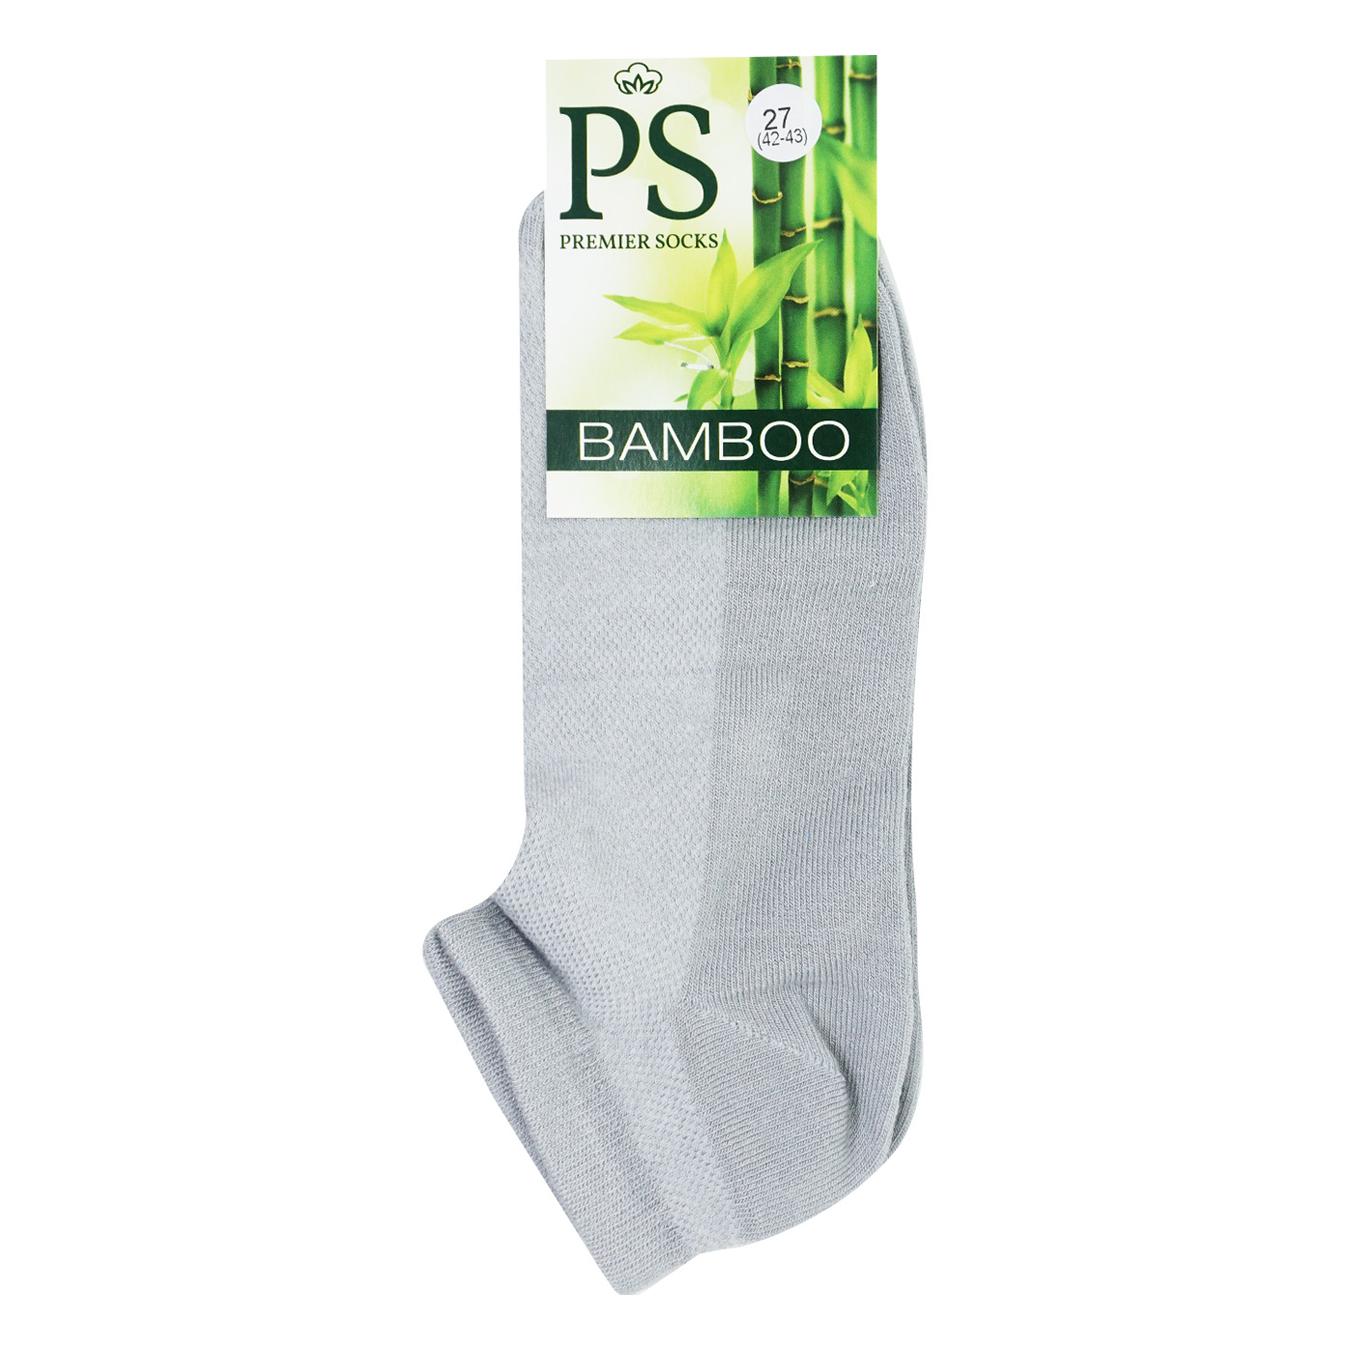 Шкарпетки чоловiчi Premier Socks Bamboo сірі короткi літні сітка 27р.